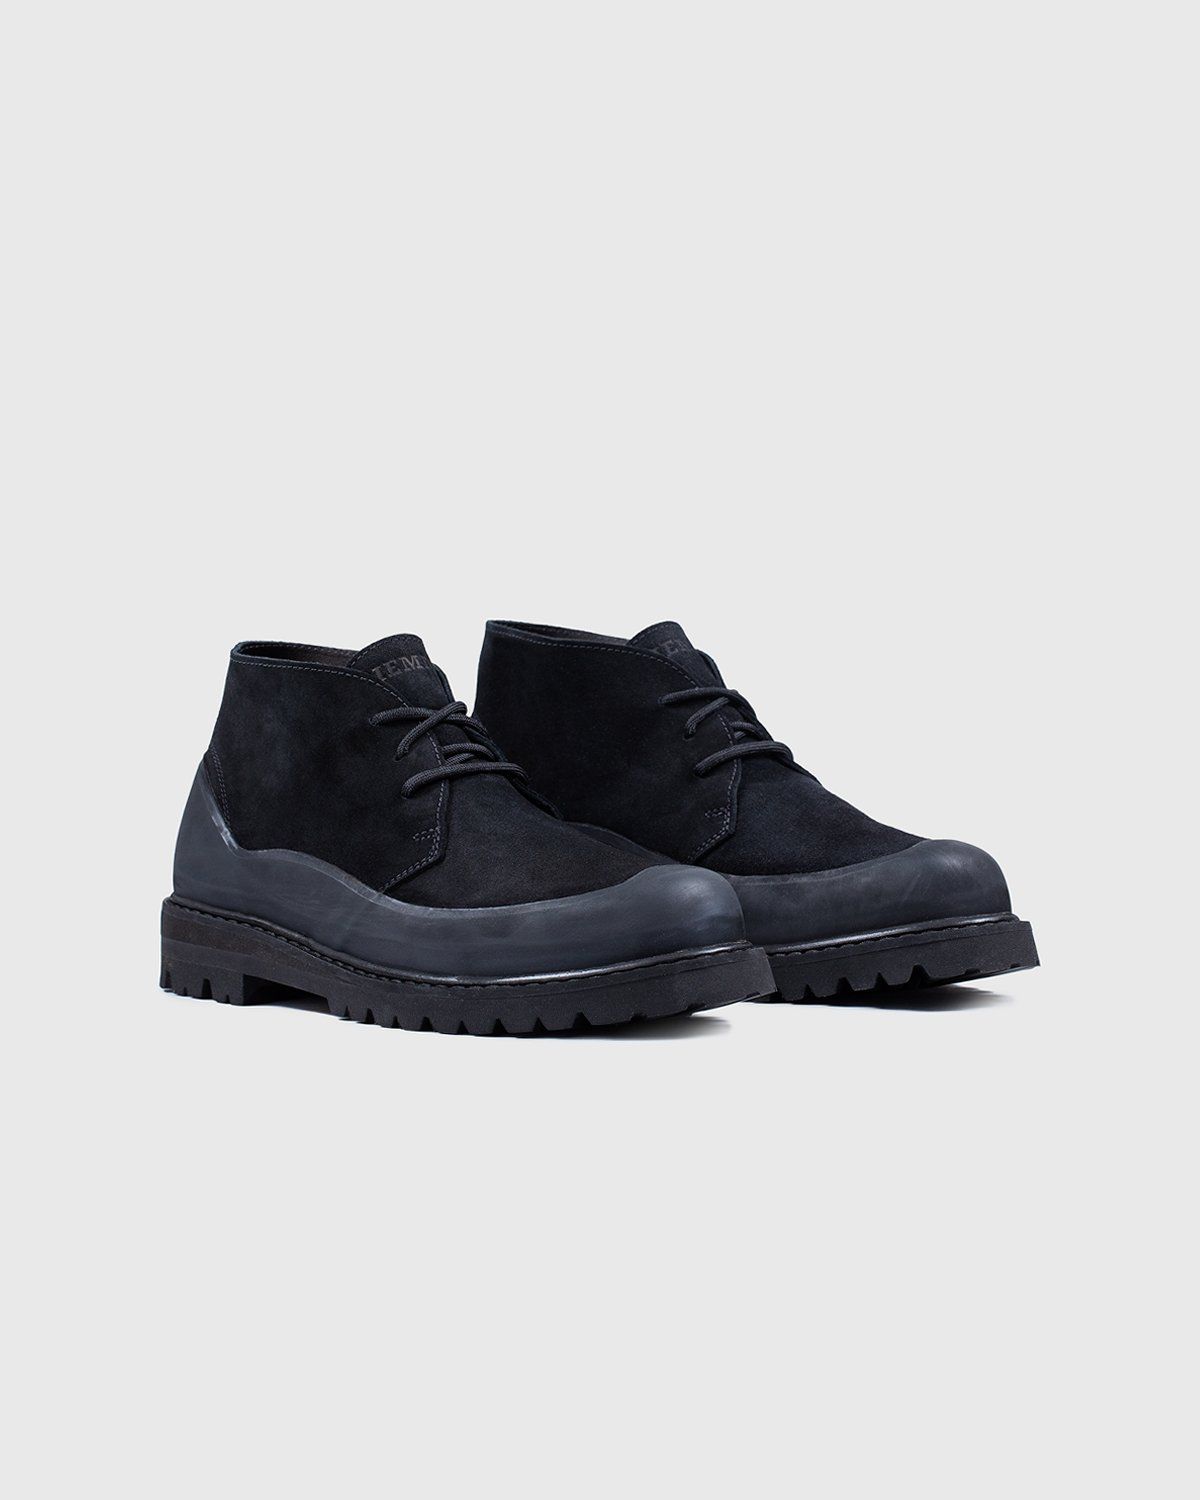 Diemme – Asiago Black Suede - Shoes - Black - Image 2